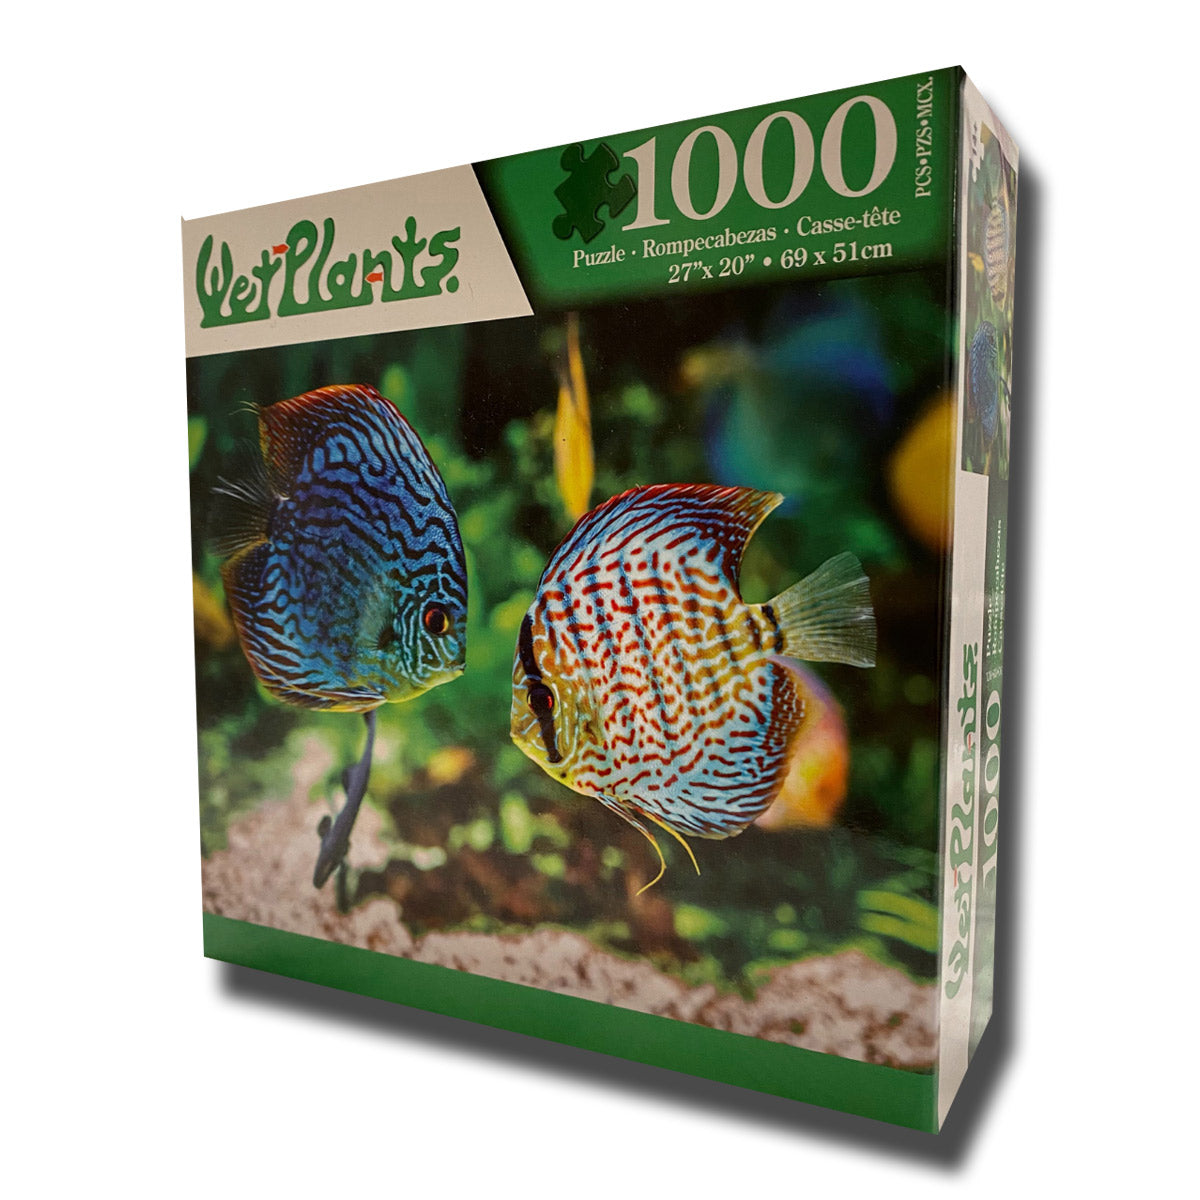 1000-Piece WetPlants Fish Puzzle